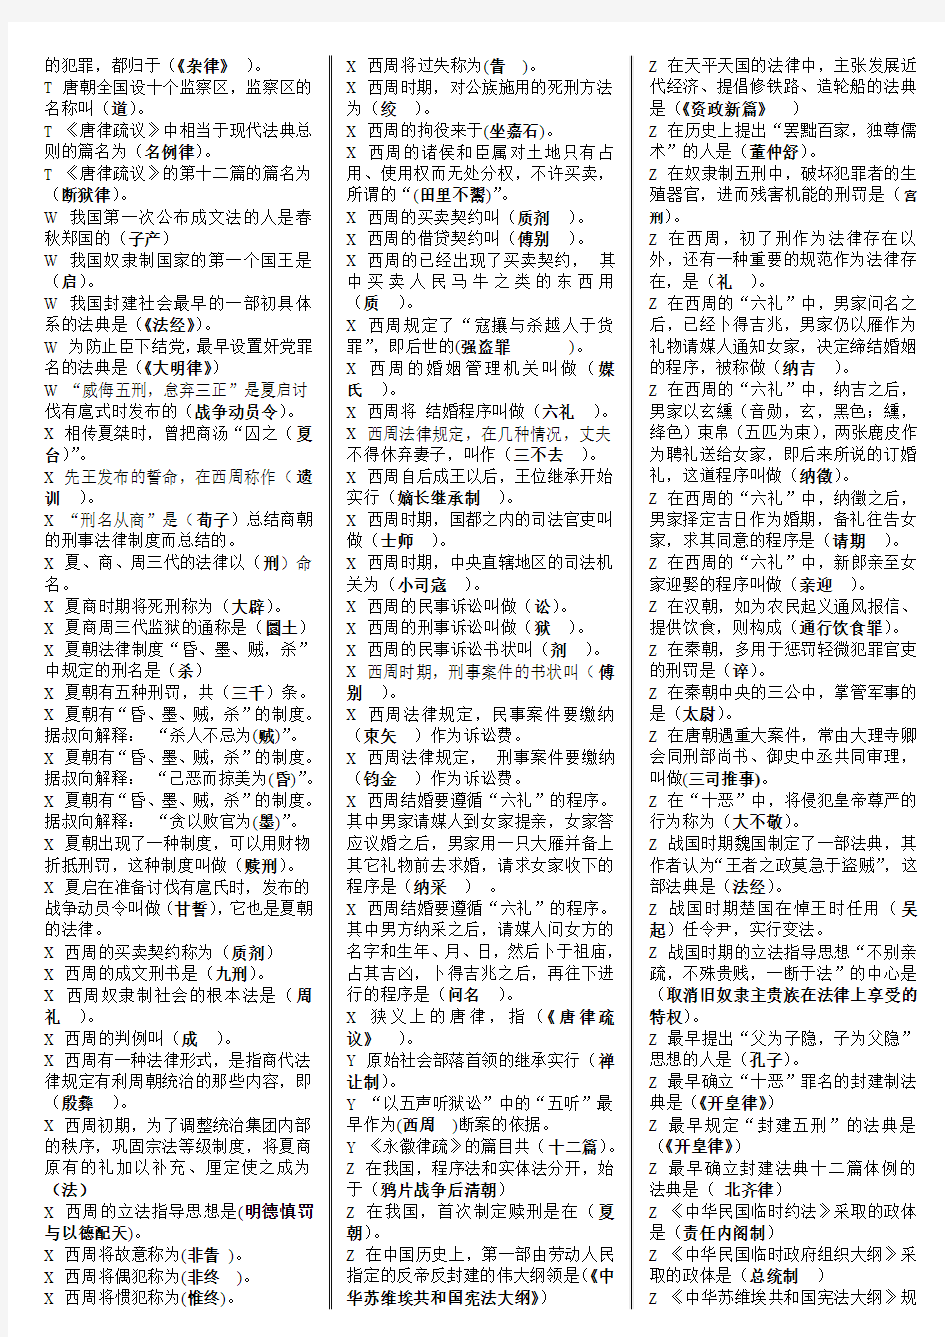 2018年电大《中国法制史》试卷试题资料附答案(已排序).